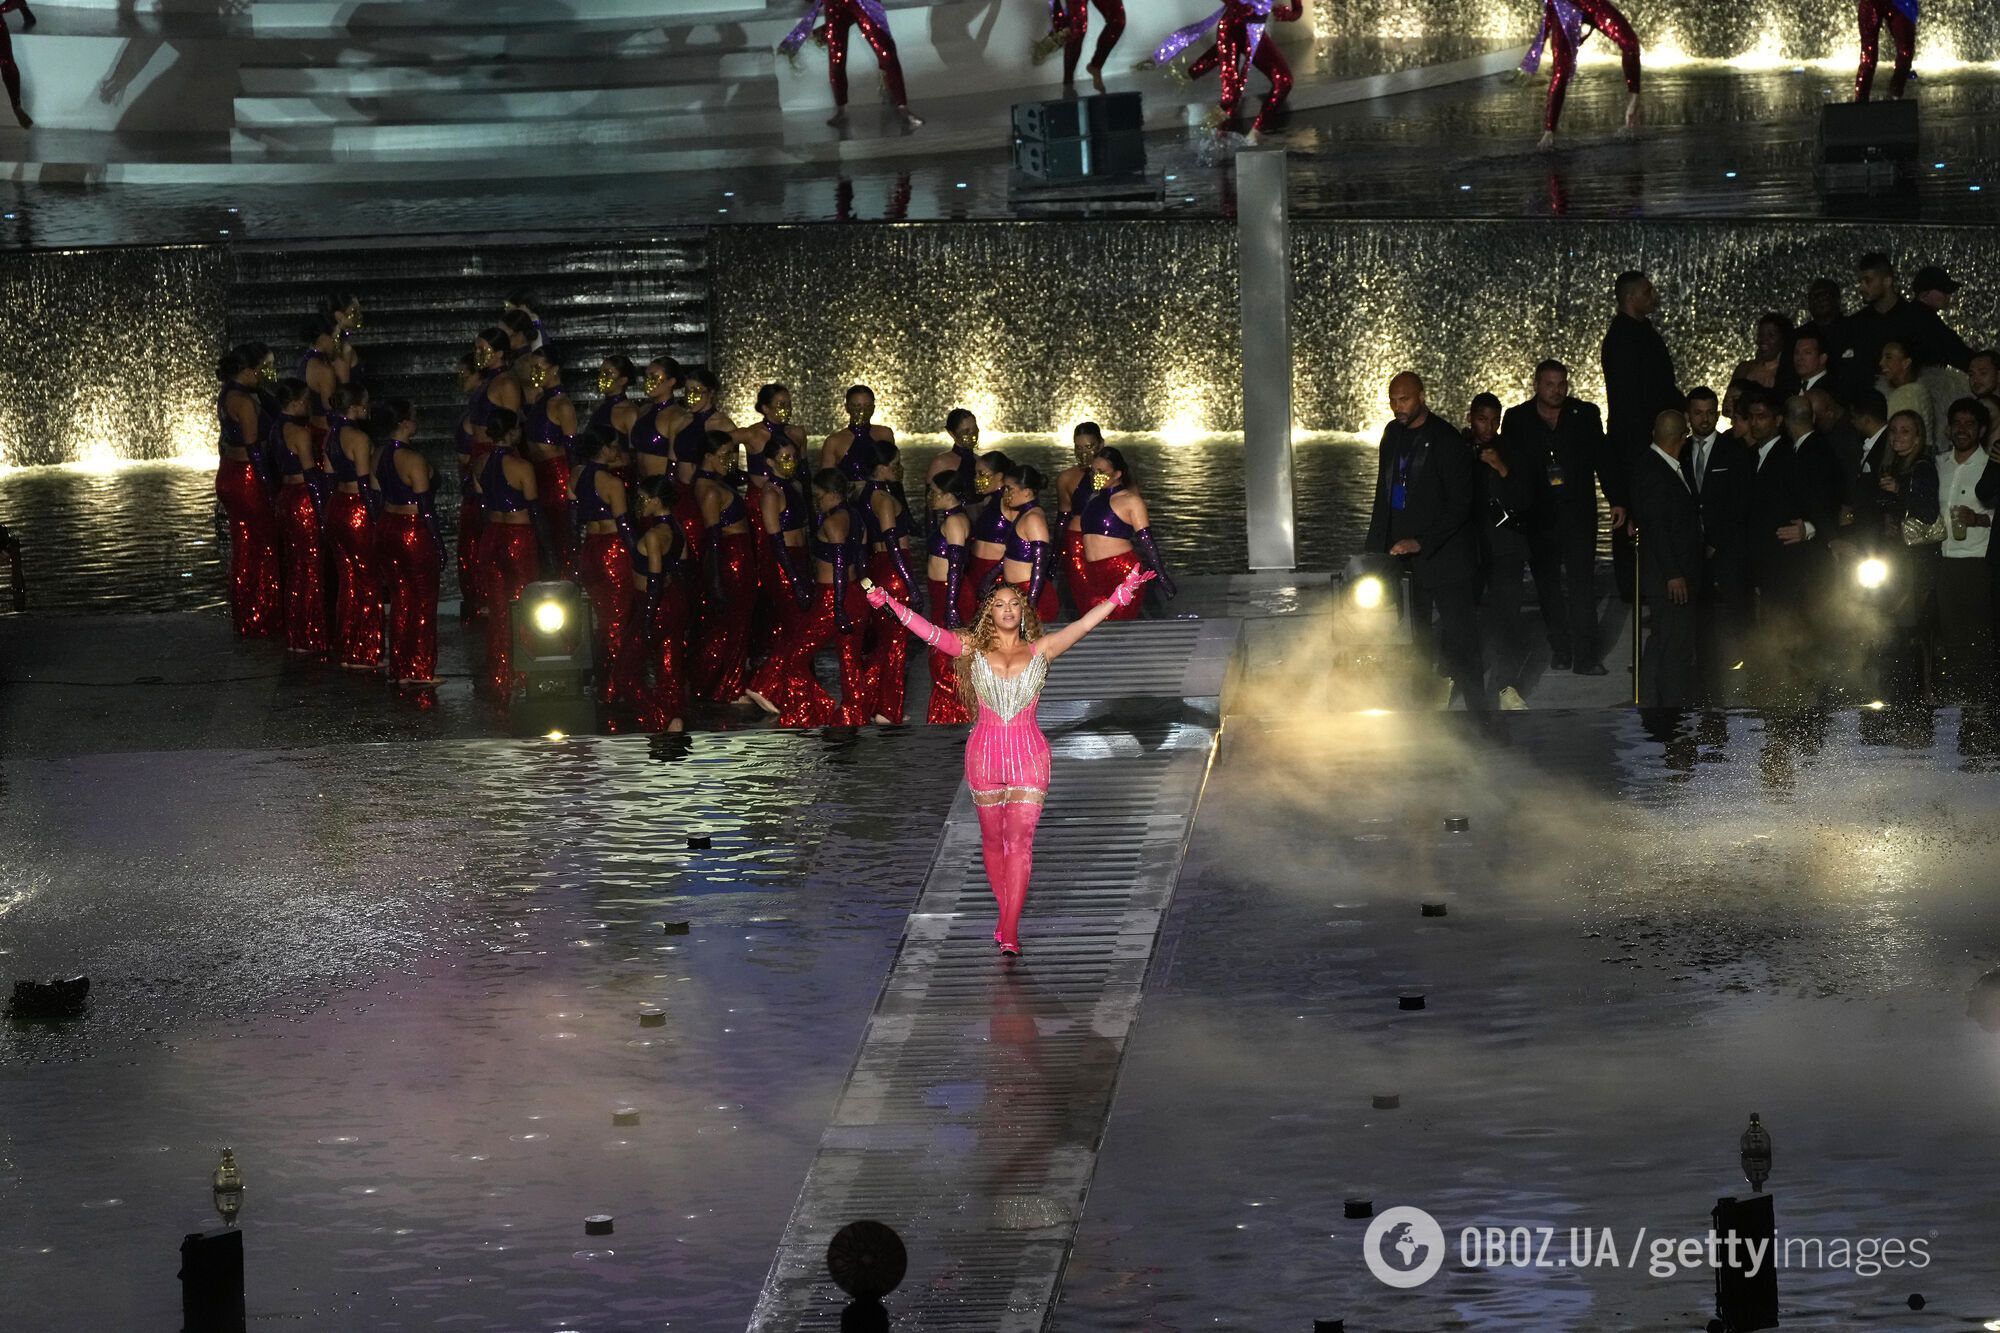 Бейонсе в соблазнительном платье от украинского бренда устроила помпезное шоу на первом за 5 лет концерте. Фото